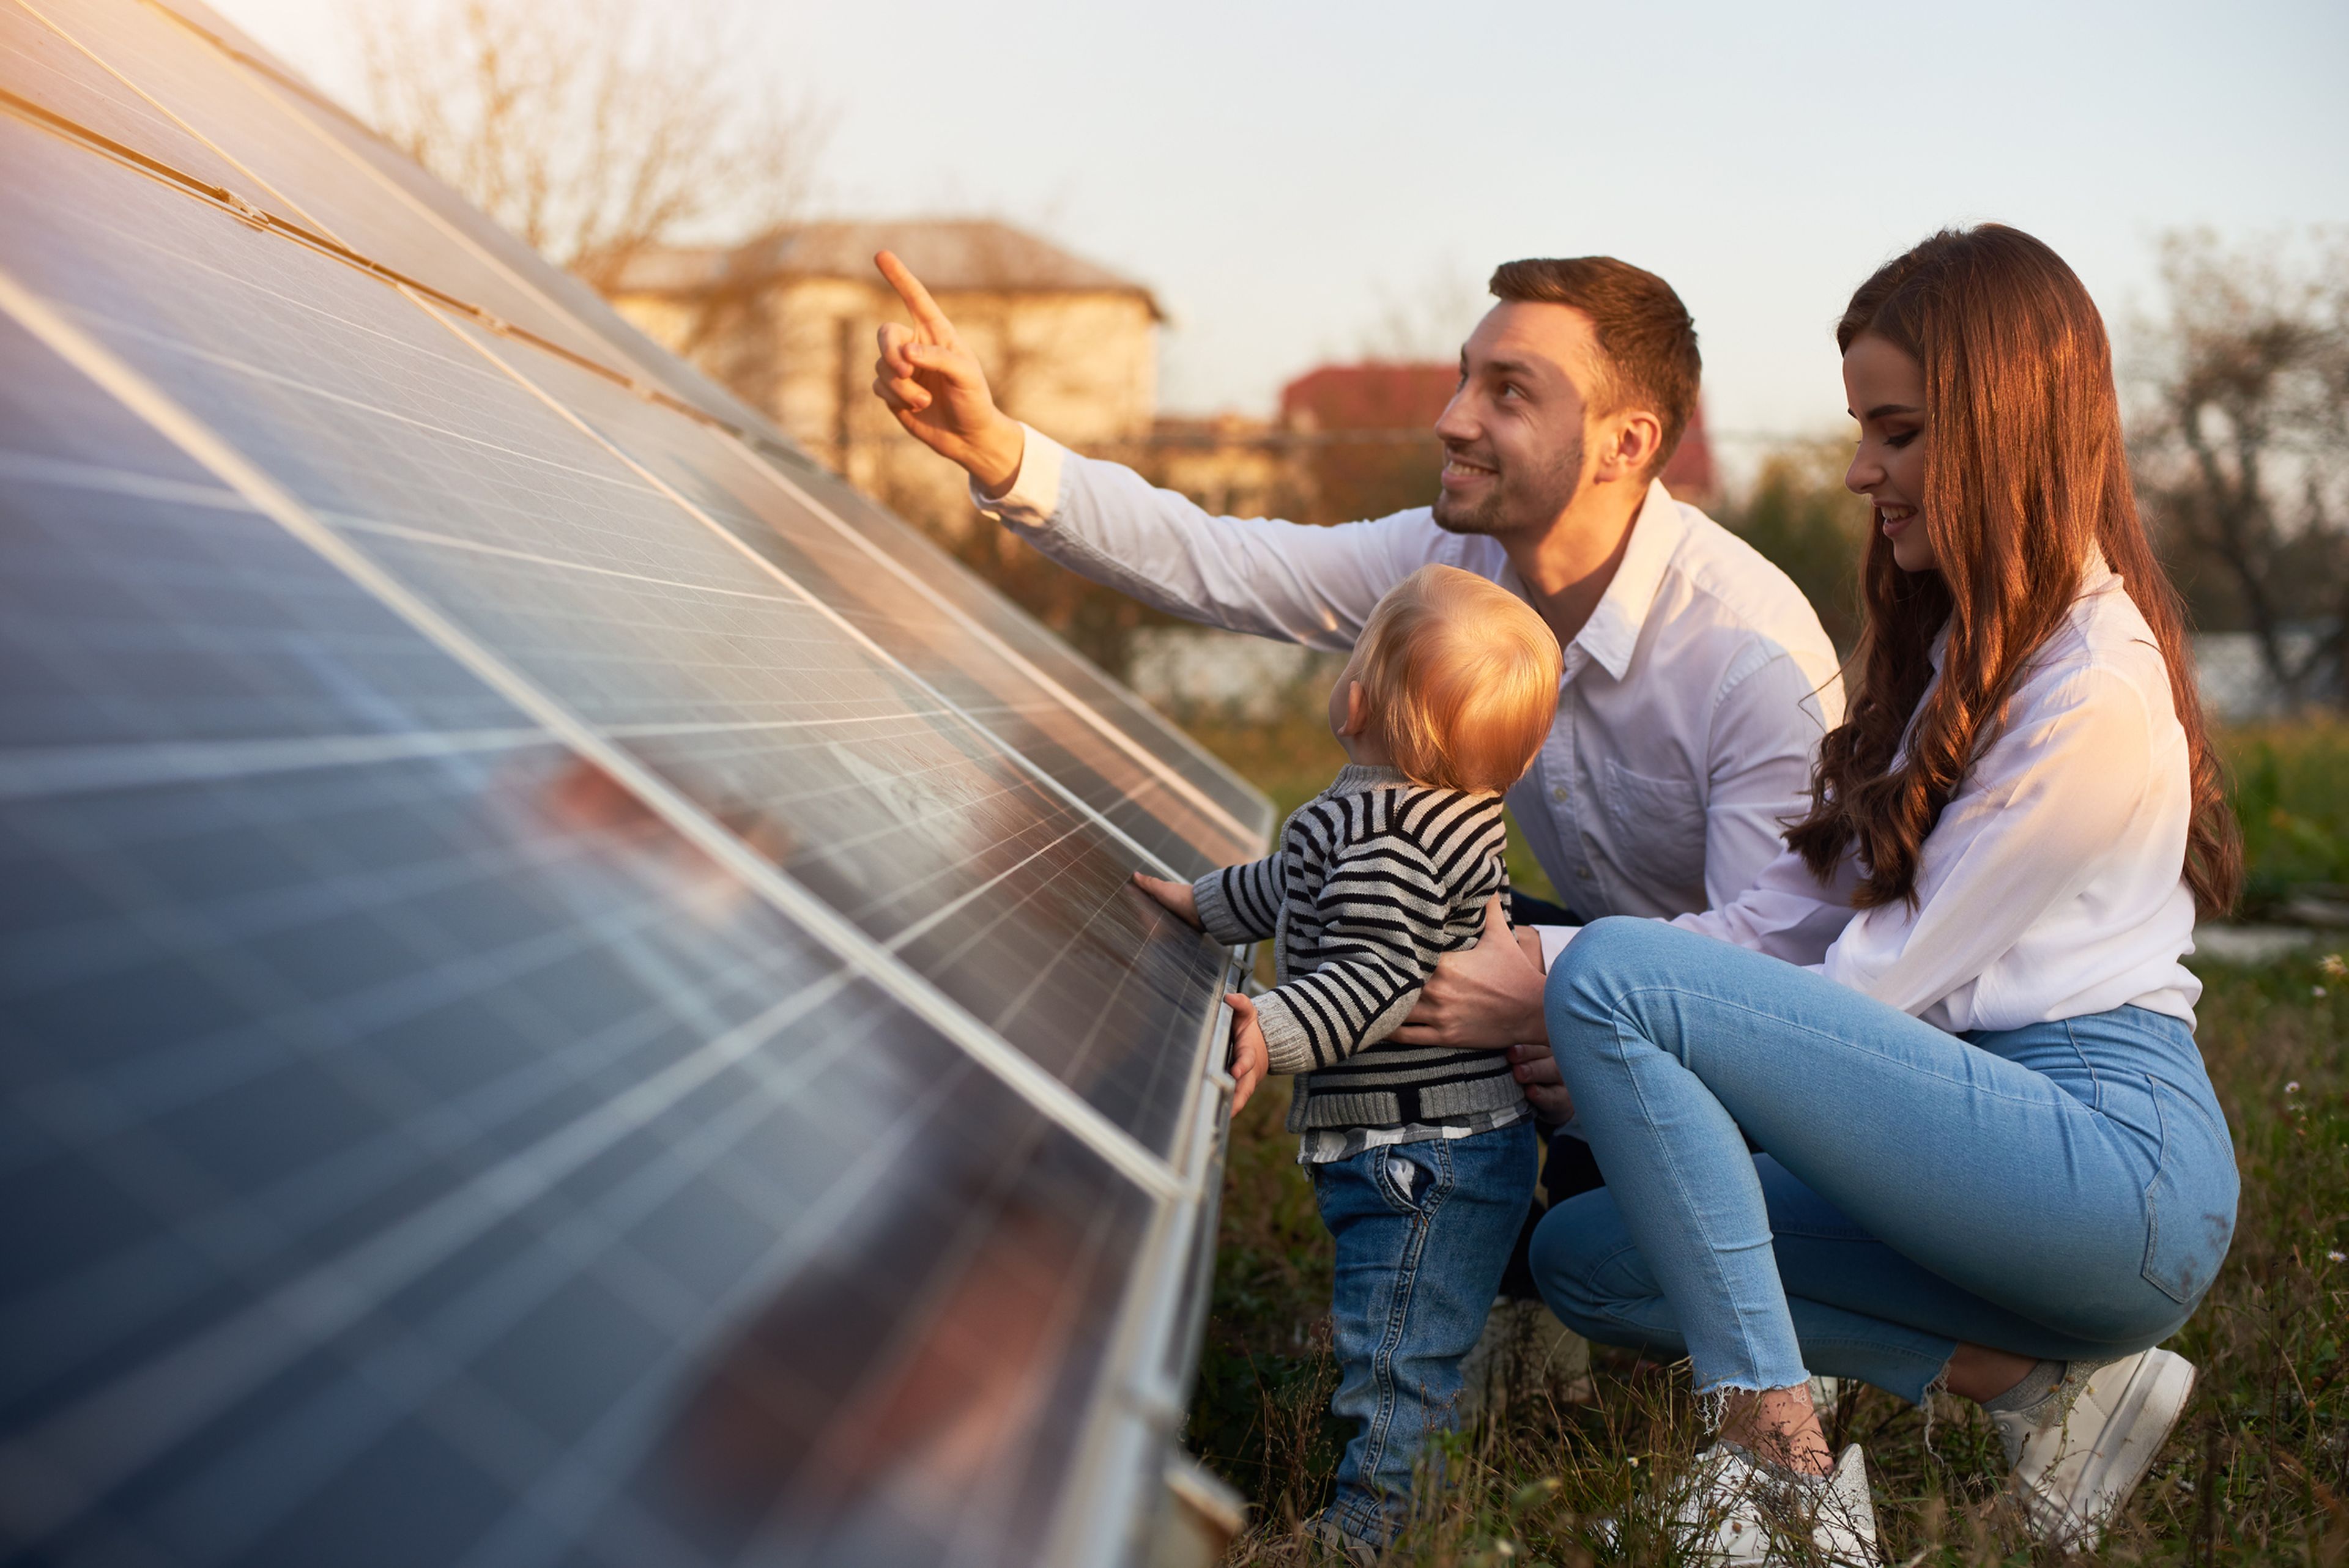 Paneles Solares Flexibles: Todo Lo Que Necesitas Saber